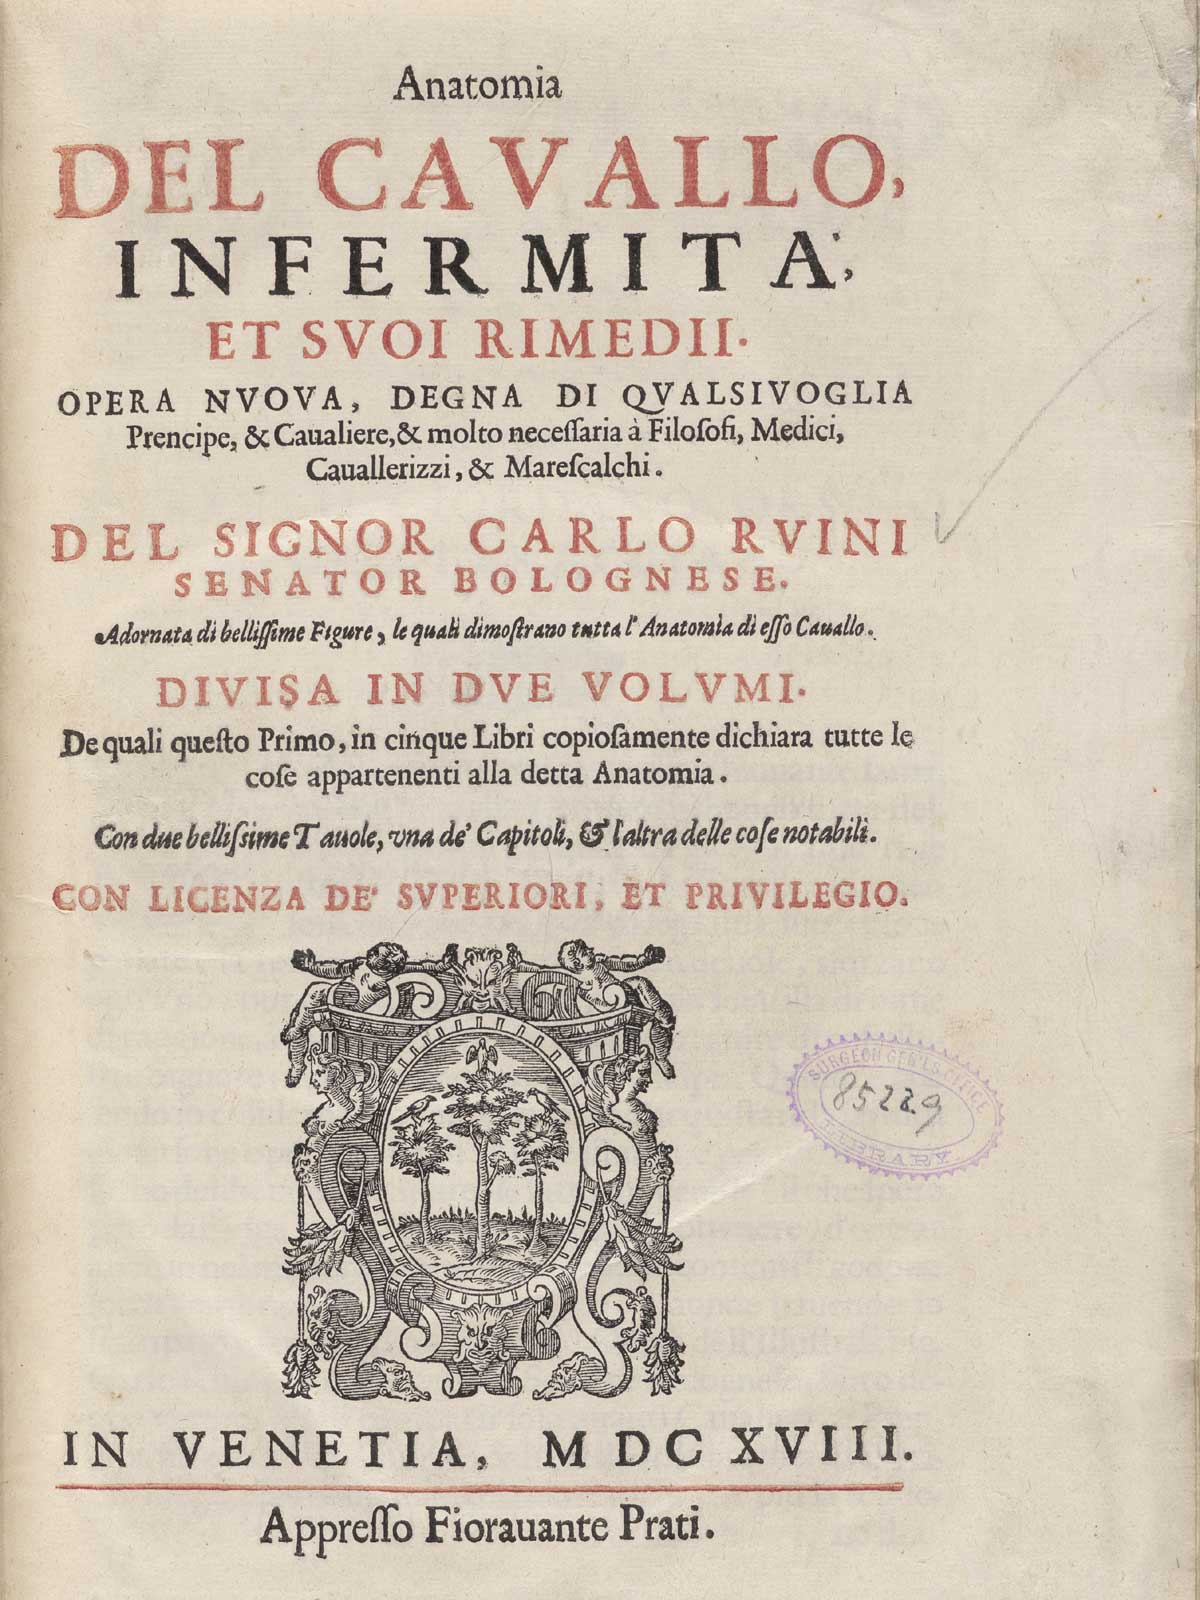 Title page of the Ruini's Anatomia del cavallo, infermità, et suoi rimedii.